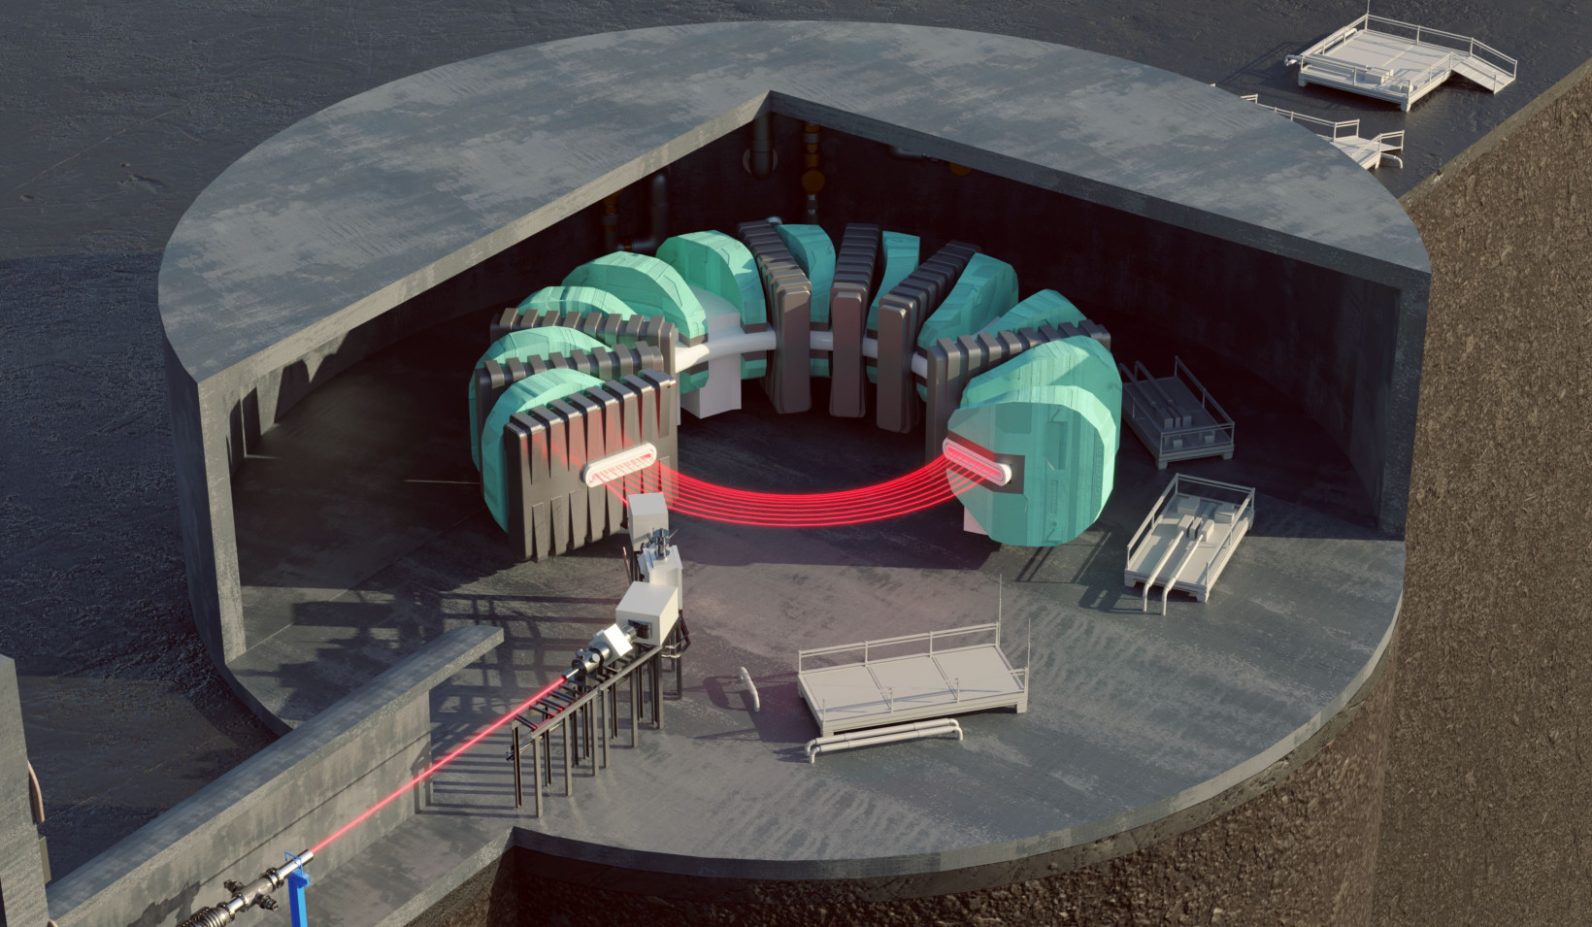 Uno scatto ravvicinato del design di Tranmutex per l'acceleratore di particelle. La startup attinge a significative competenze da CERN - sede del Large Hadron Collider, diventato il più grande acceleratore di particelle al mondo quando è stato attivato nel 2008. Credit: Transmutex